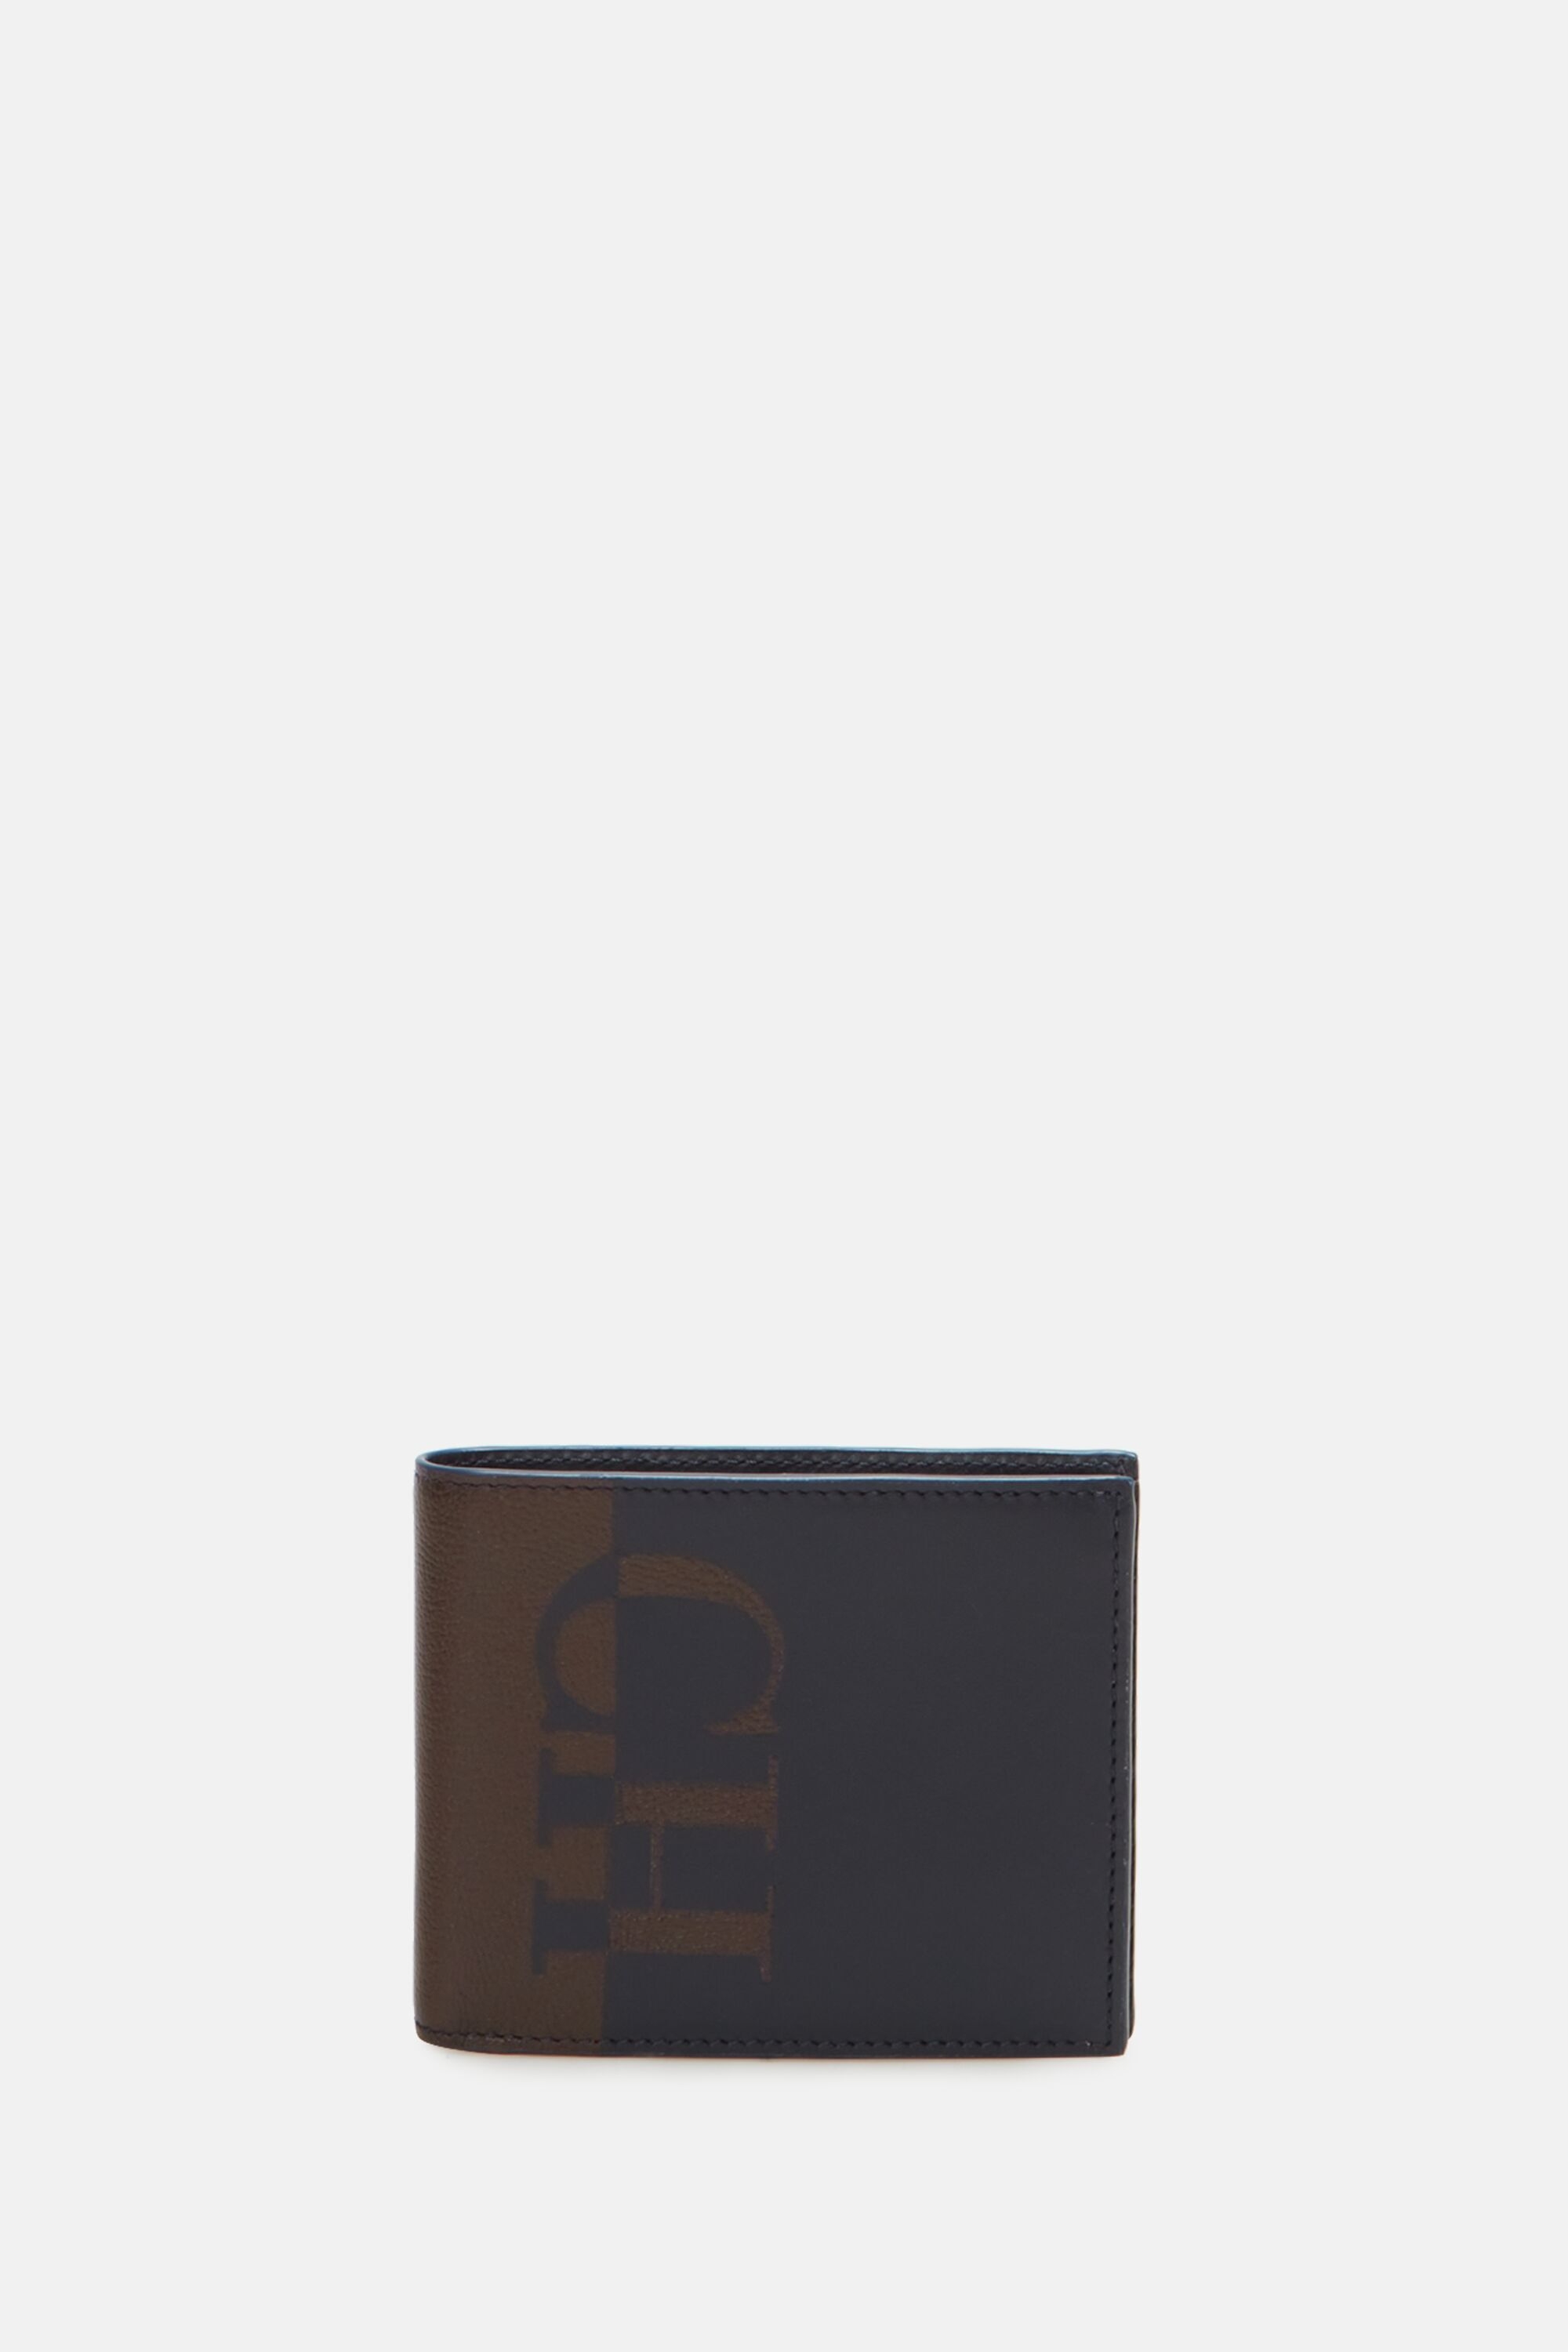 CHHC | Billfold 6 wallet